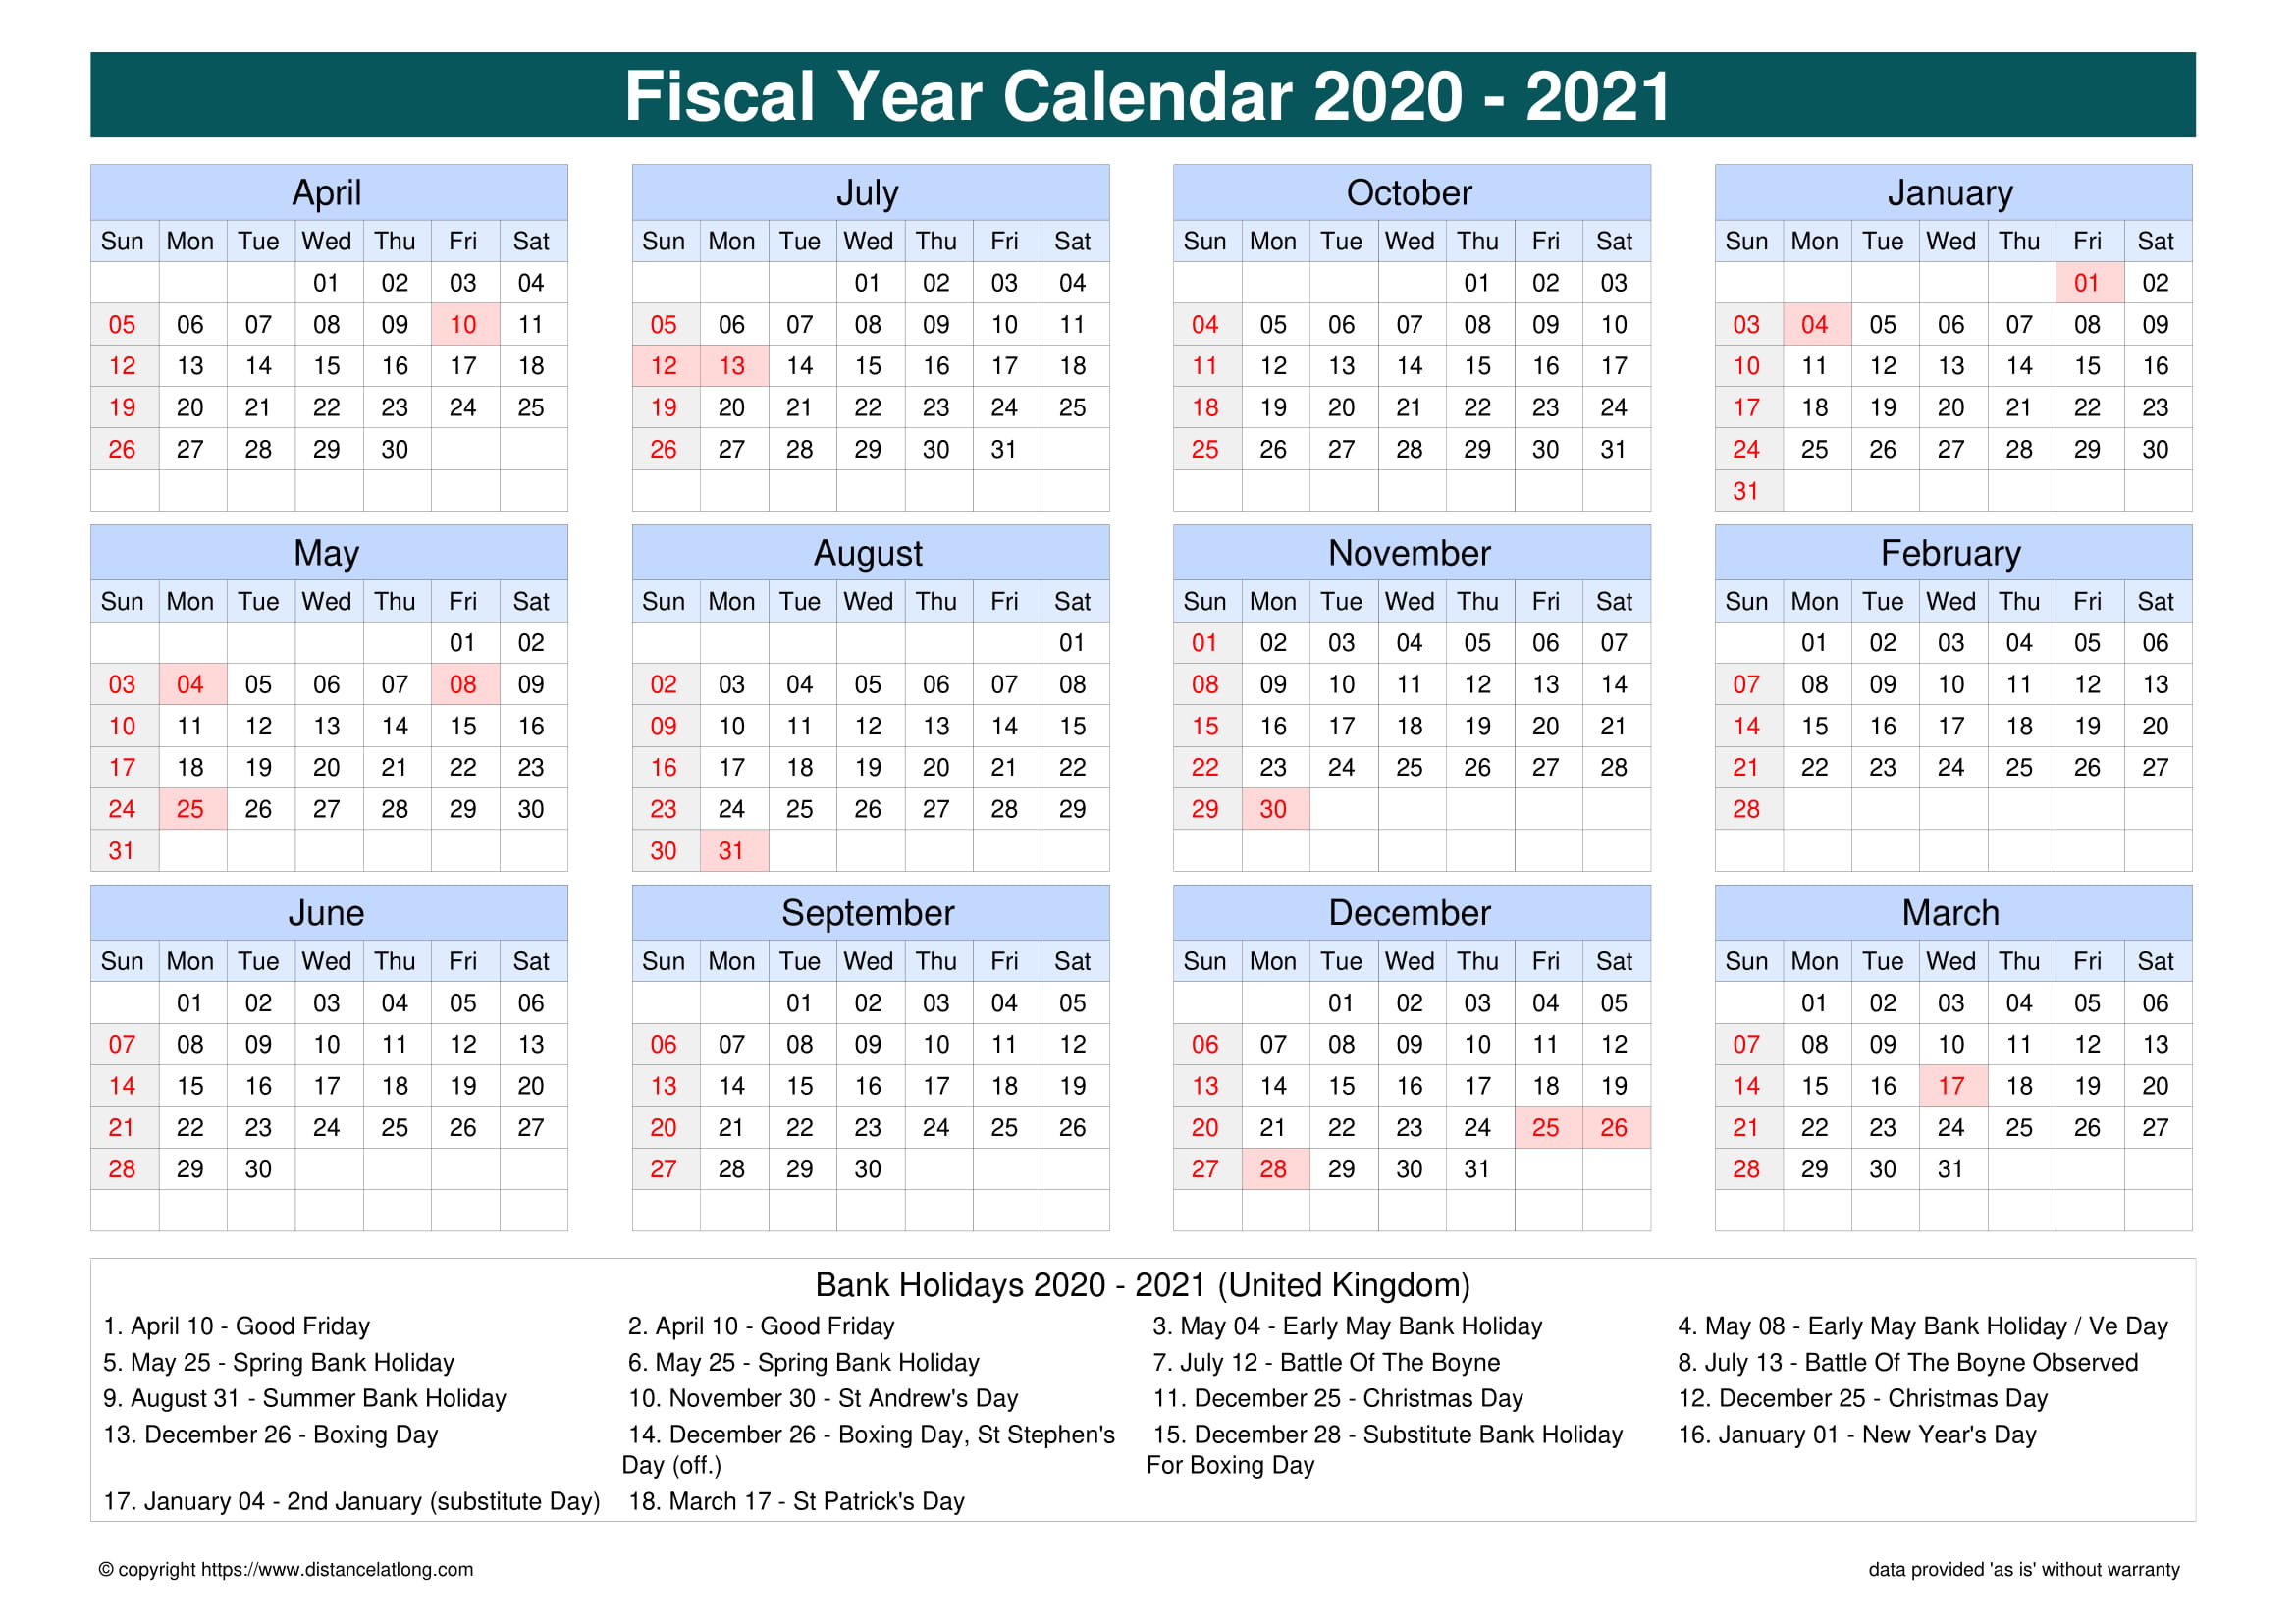 religious calendar 2021 uk Fiscal Year 2020 2021 Calendar Templates Free Printable Fiscal Calendar Templates Distancelatlong Com religious calendar 2021 uk